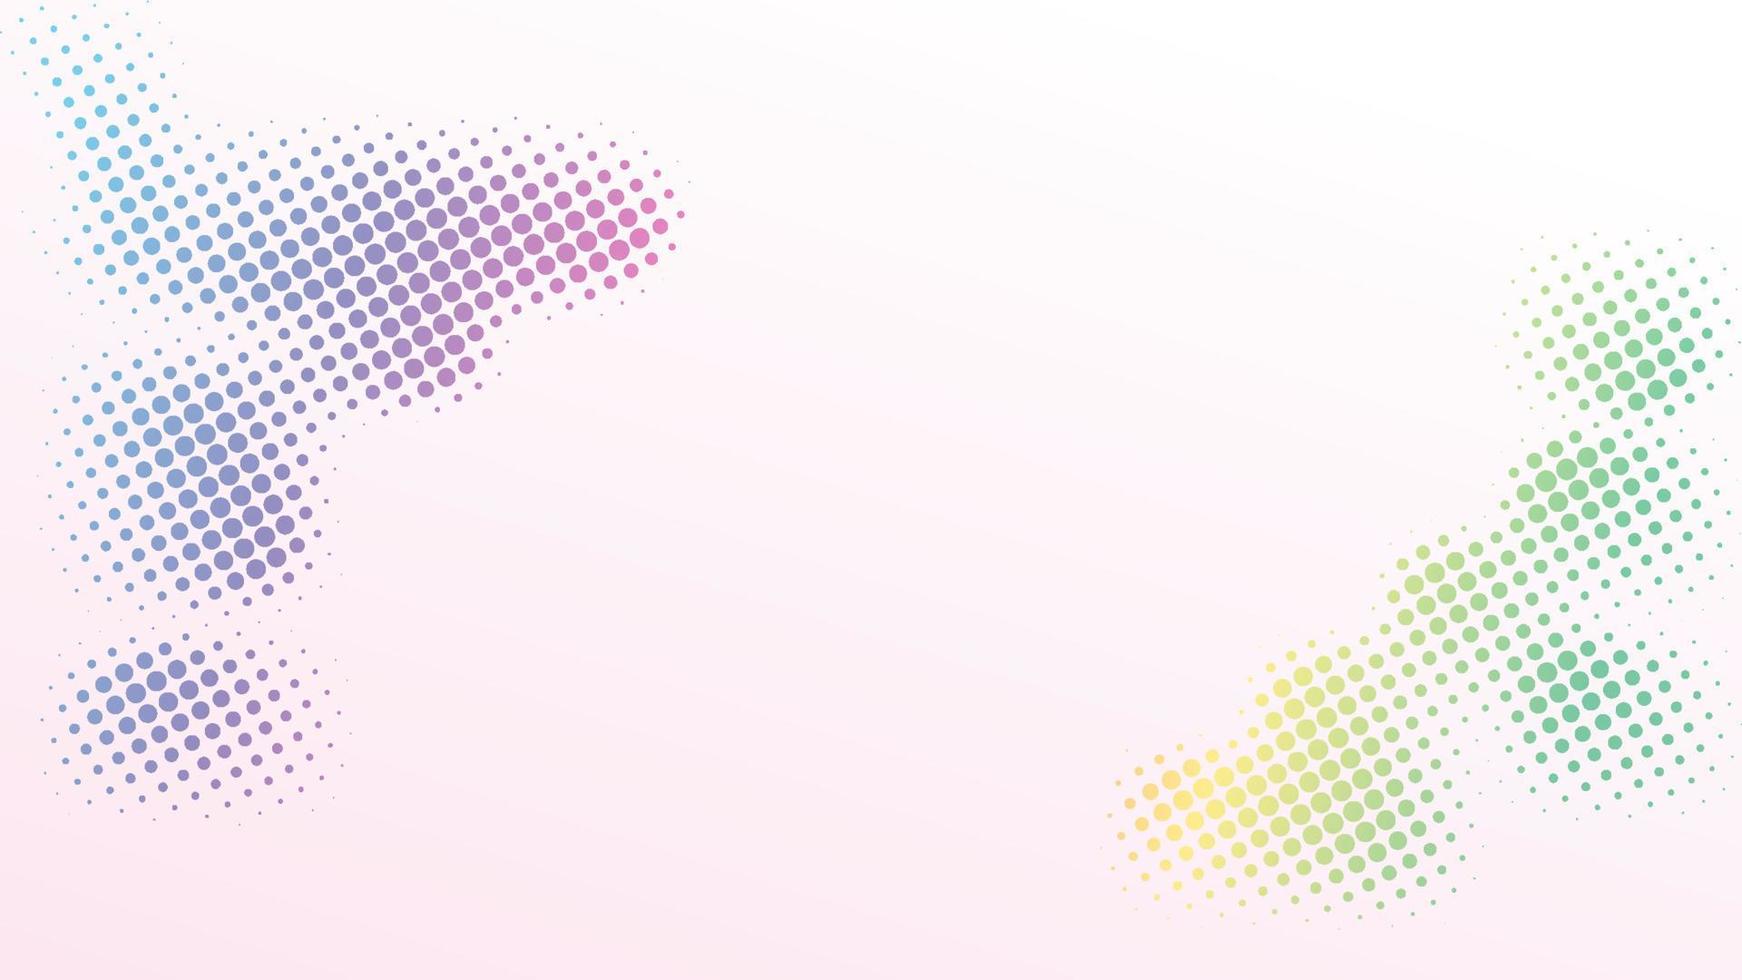 Halbton-Hintergrunddesign-Vorlage, Pop-Art, abstrakte Punktmusterillustration, Retro-Texturelement, rosa beige violette gelbe grüne Farbverlaufsfarbe vektor